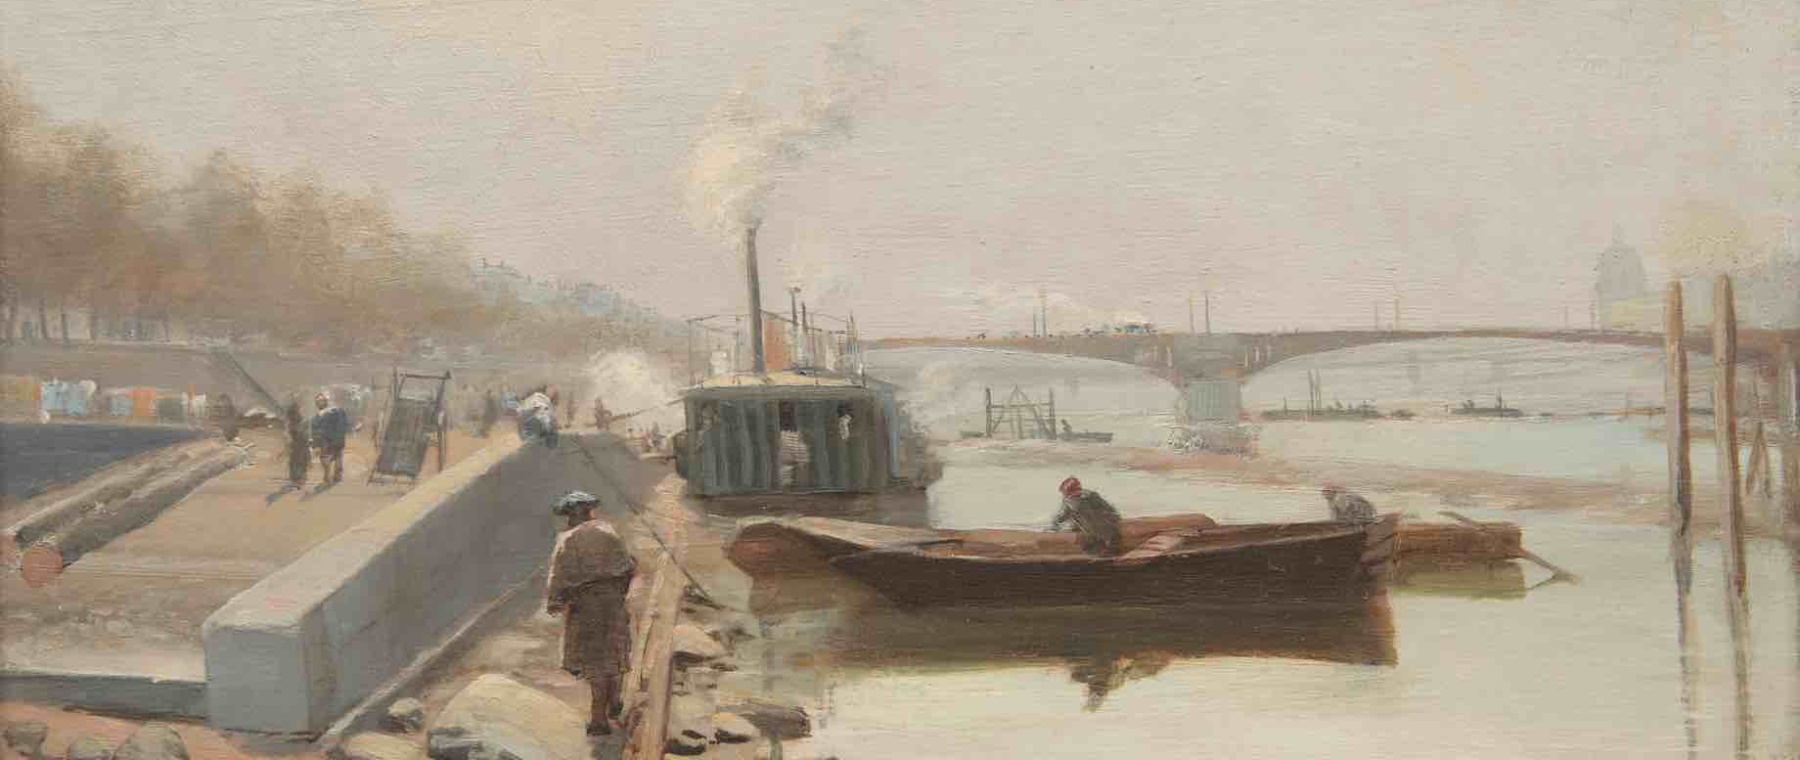 David Eugene Girin Lyon 1848 id 1917 Effets de brouillard sur les quais du Rhone huile sur toile 34 56 cm © Tomaselli Collection